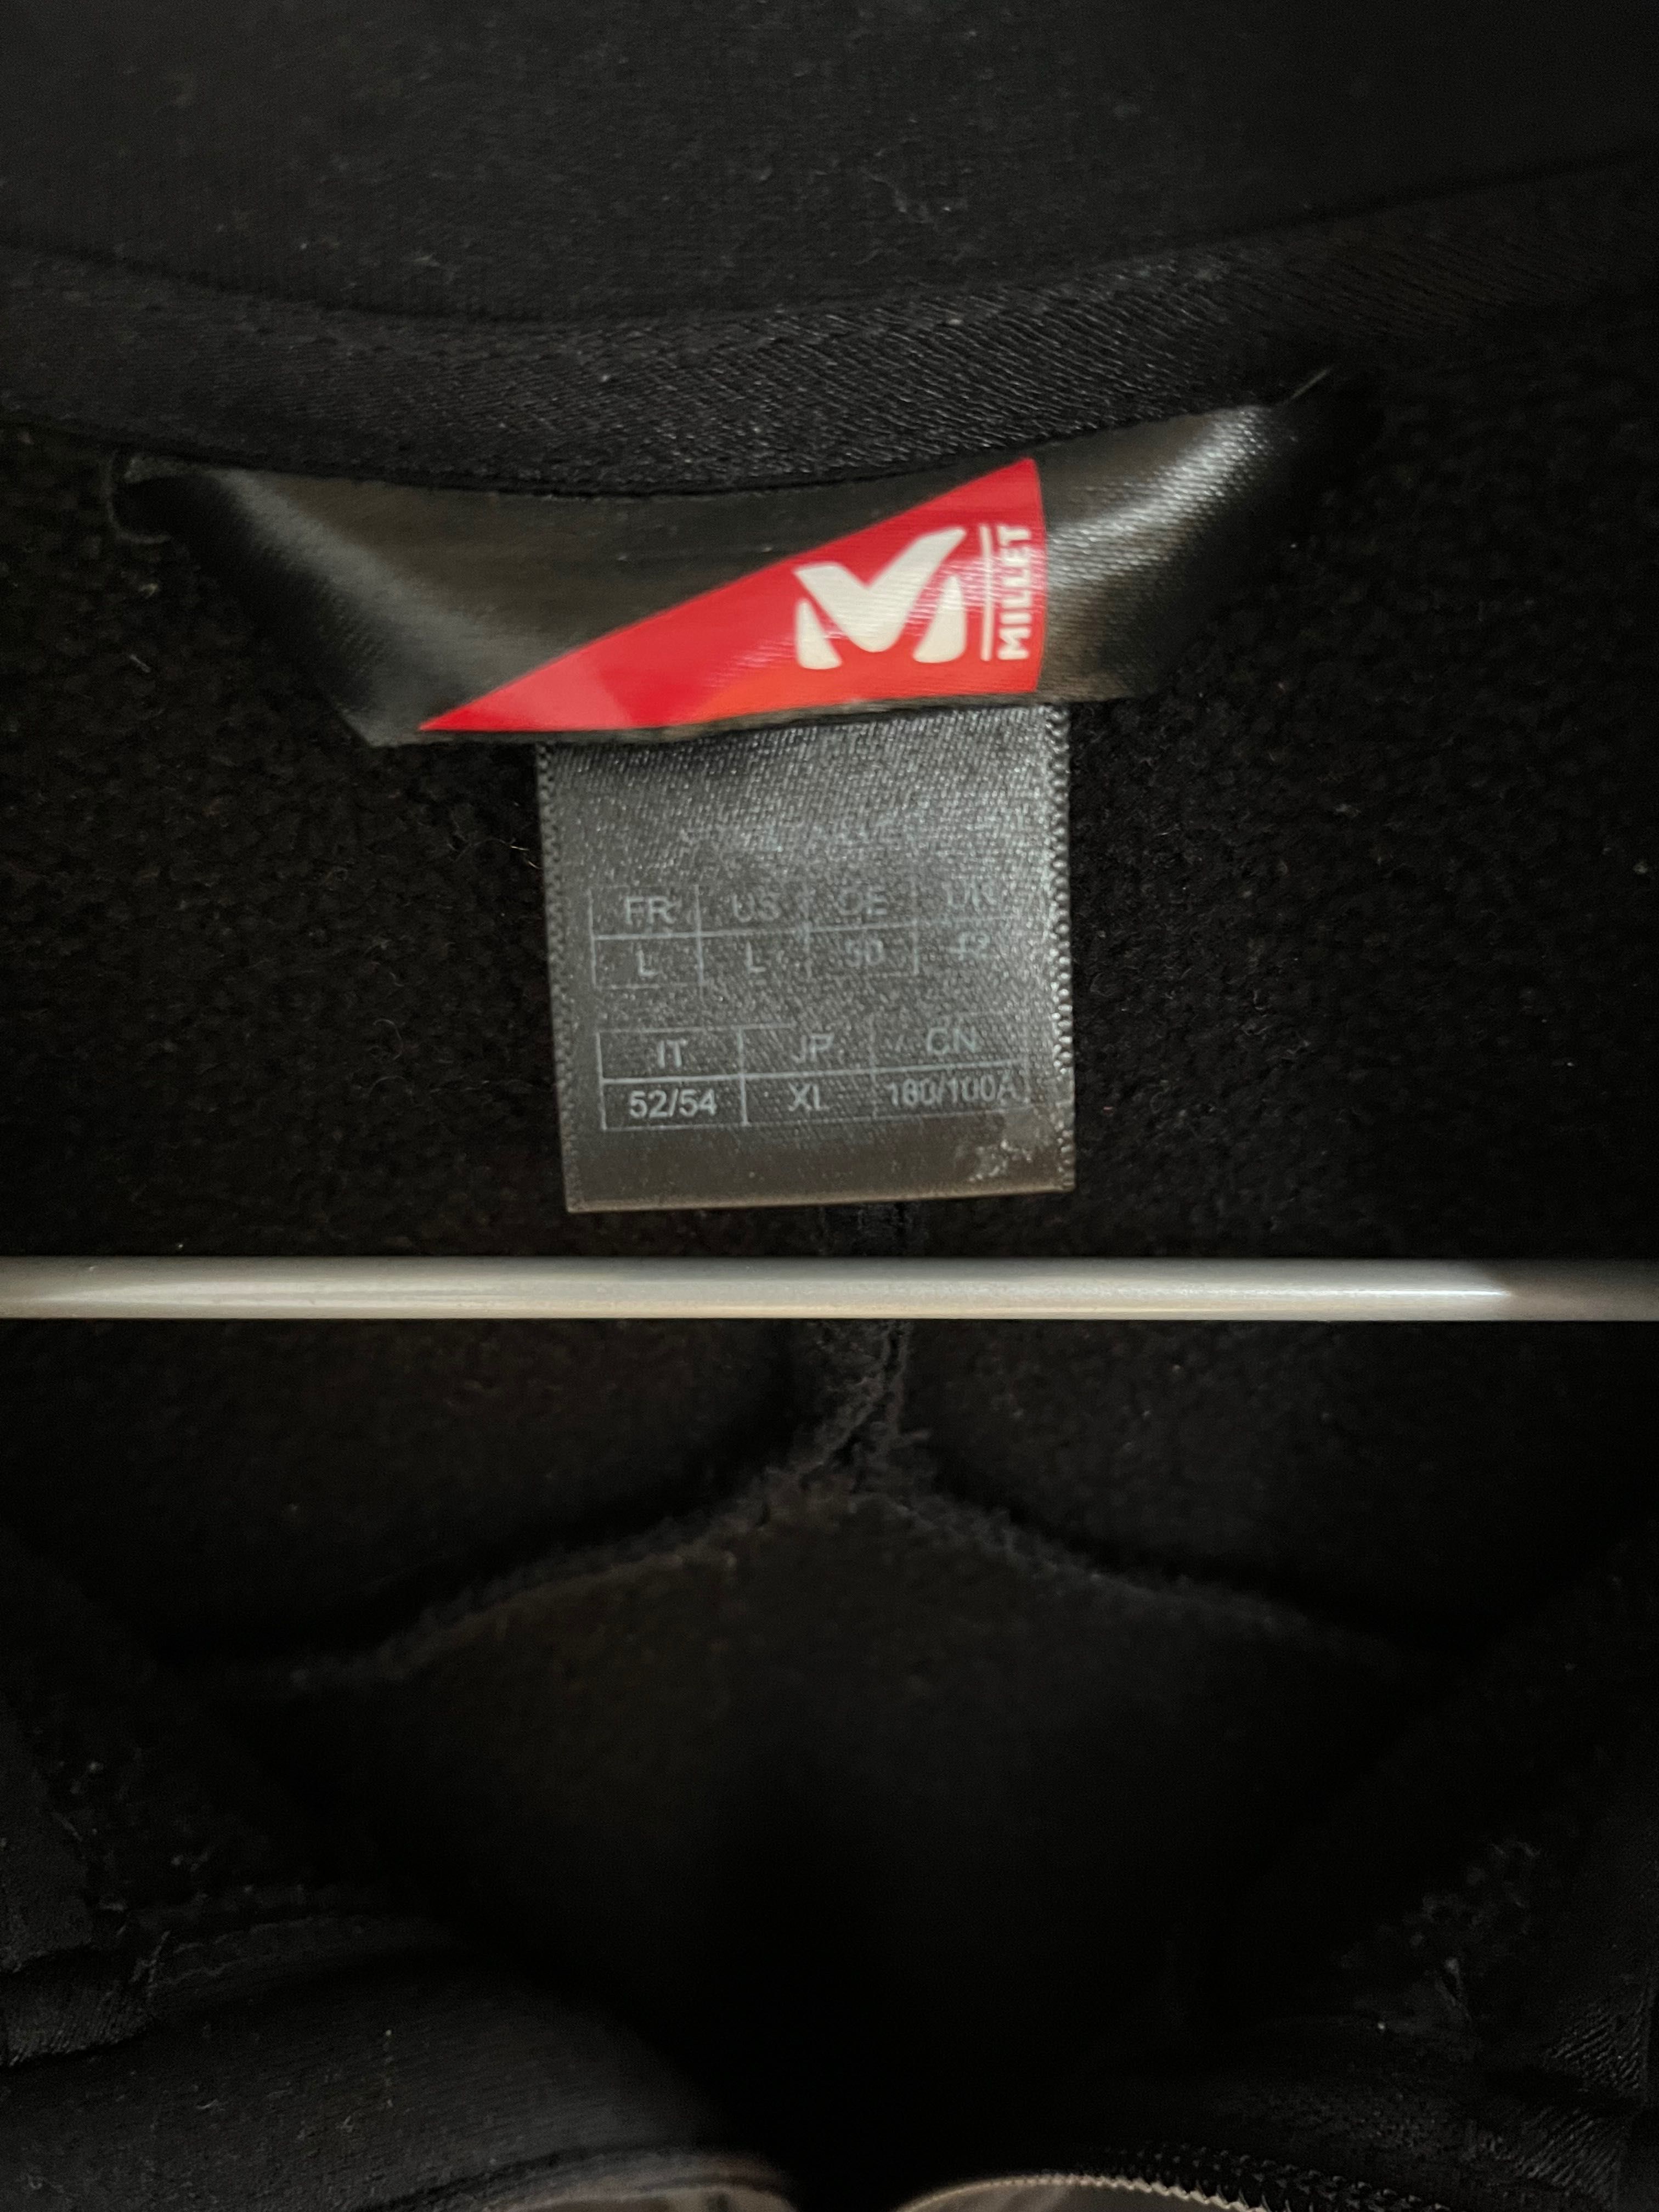 Kurtka firmy Millet, model Fusion Power Jacket, rozmiar L męski